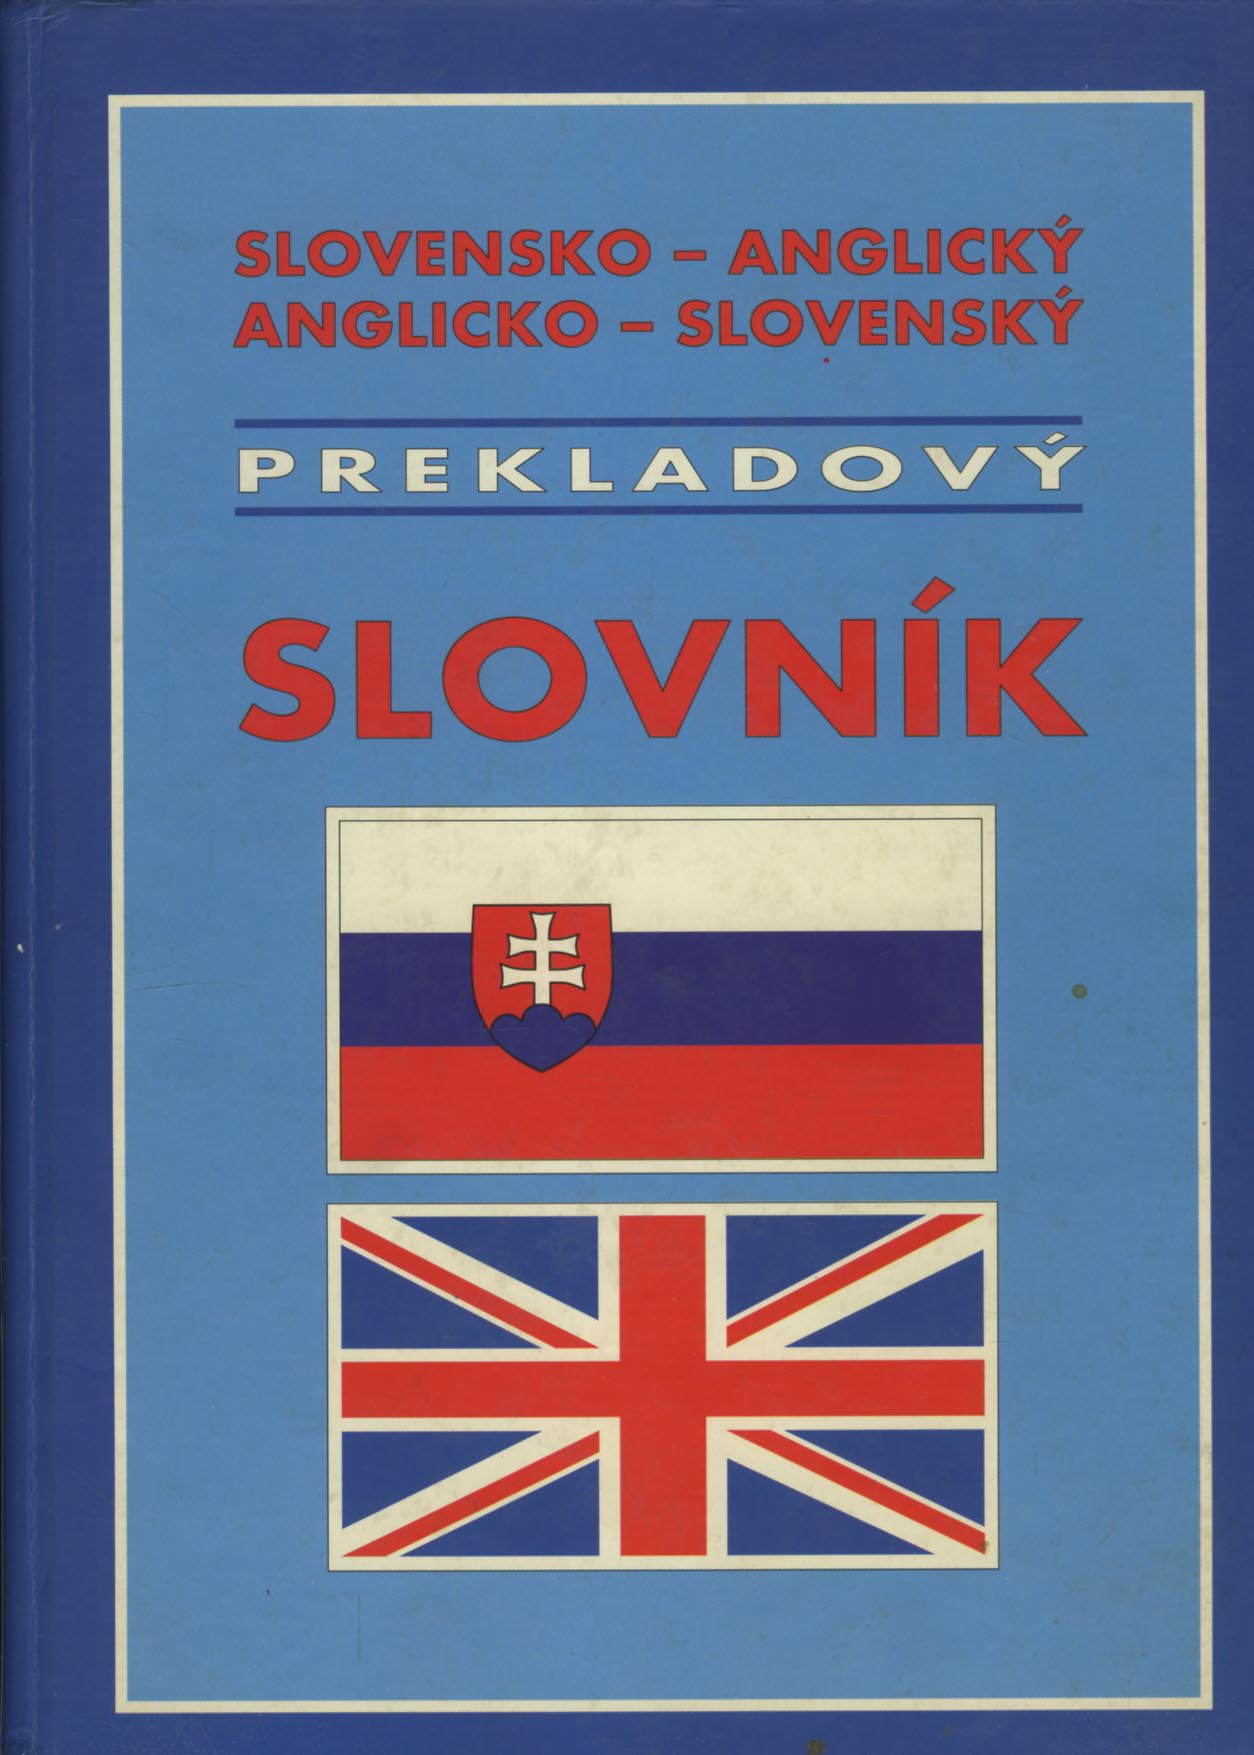 Slovensko - anglický / Anglicko - slovenský prekladový slovník